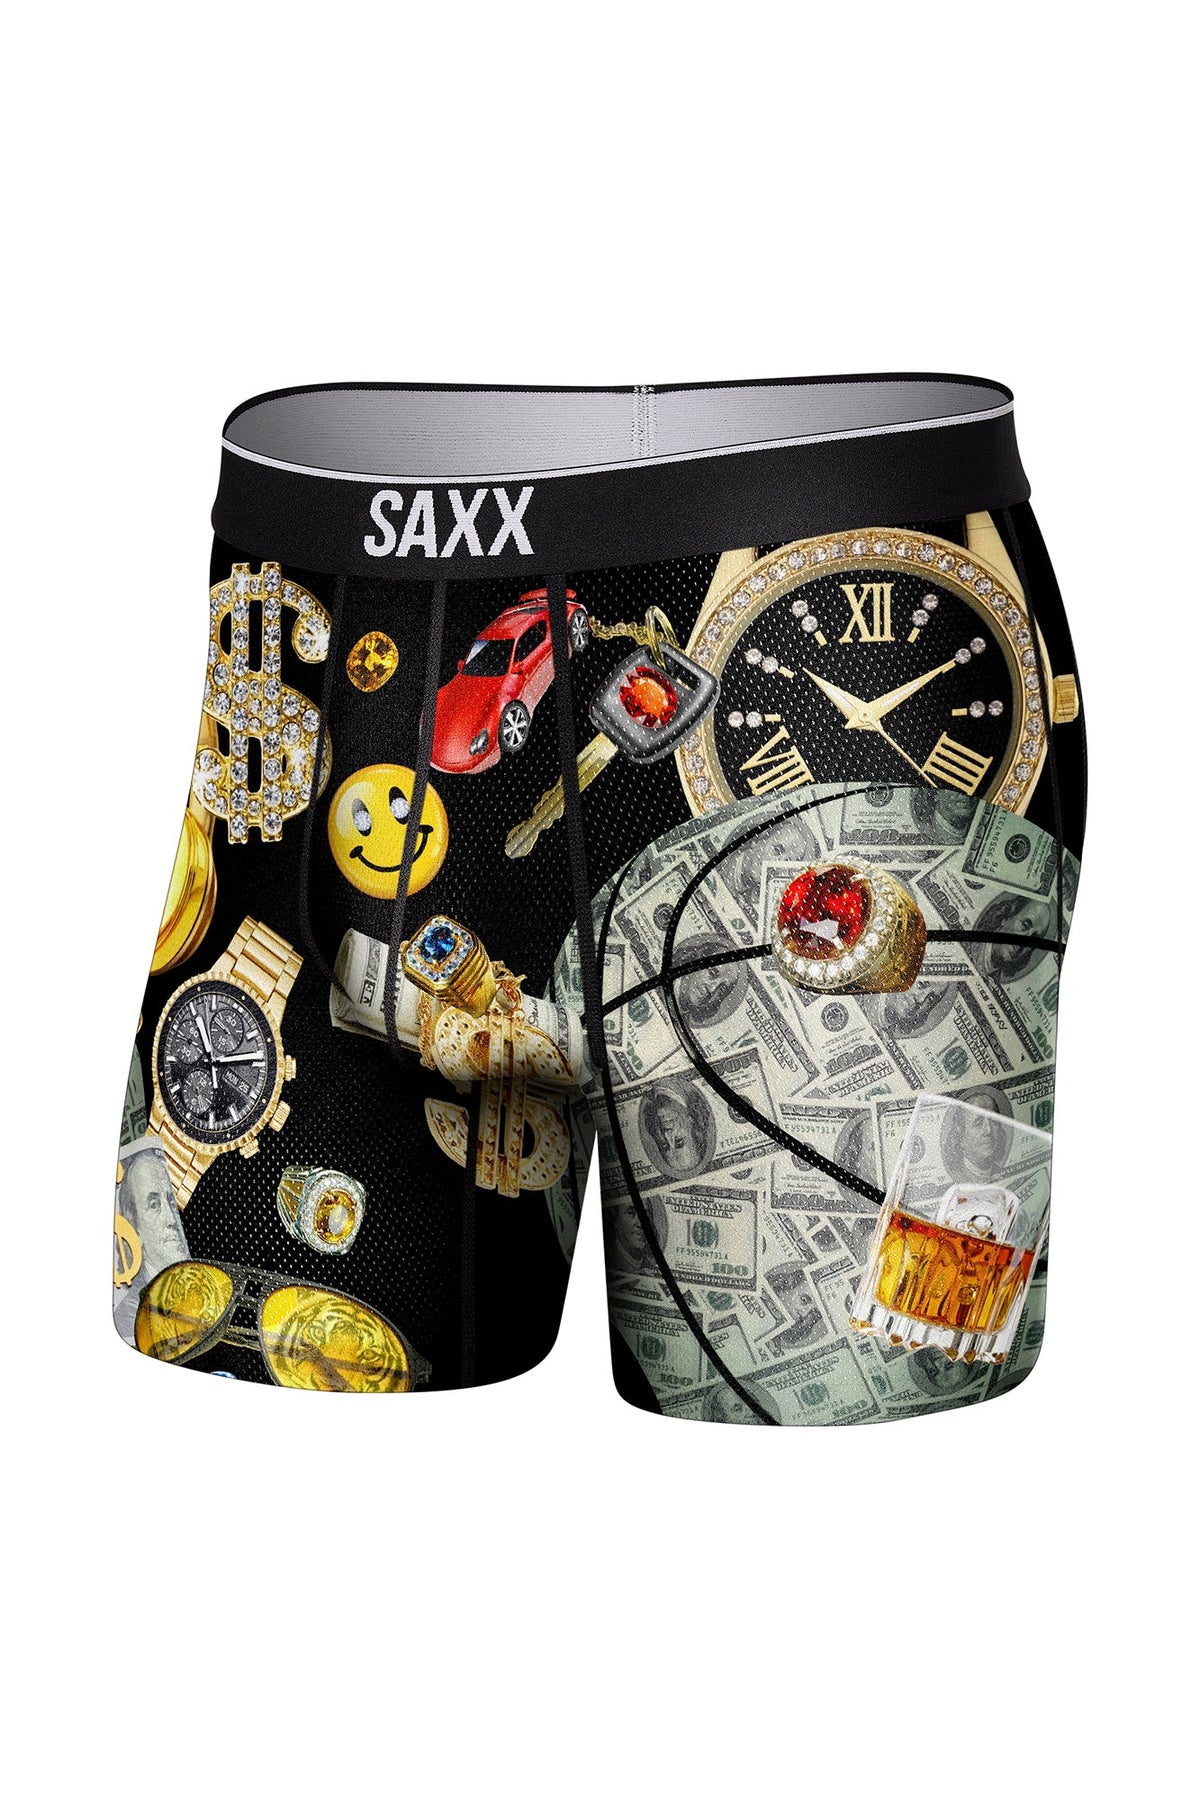 Boxer pour homme par Saxx | Volt SXBB29 MBB | Machemise.ca, vêtements mode pour hommes